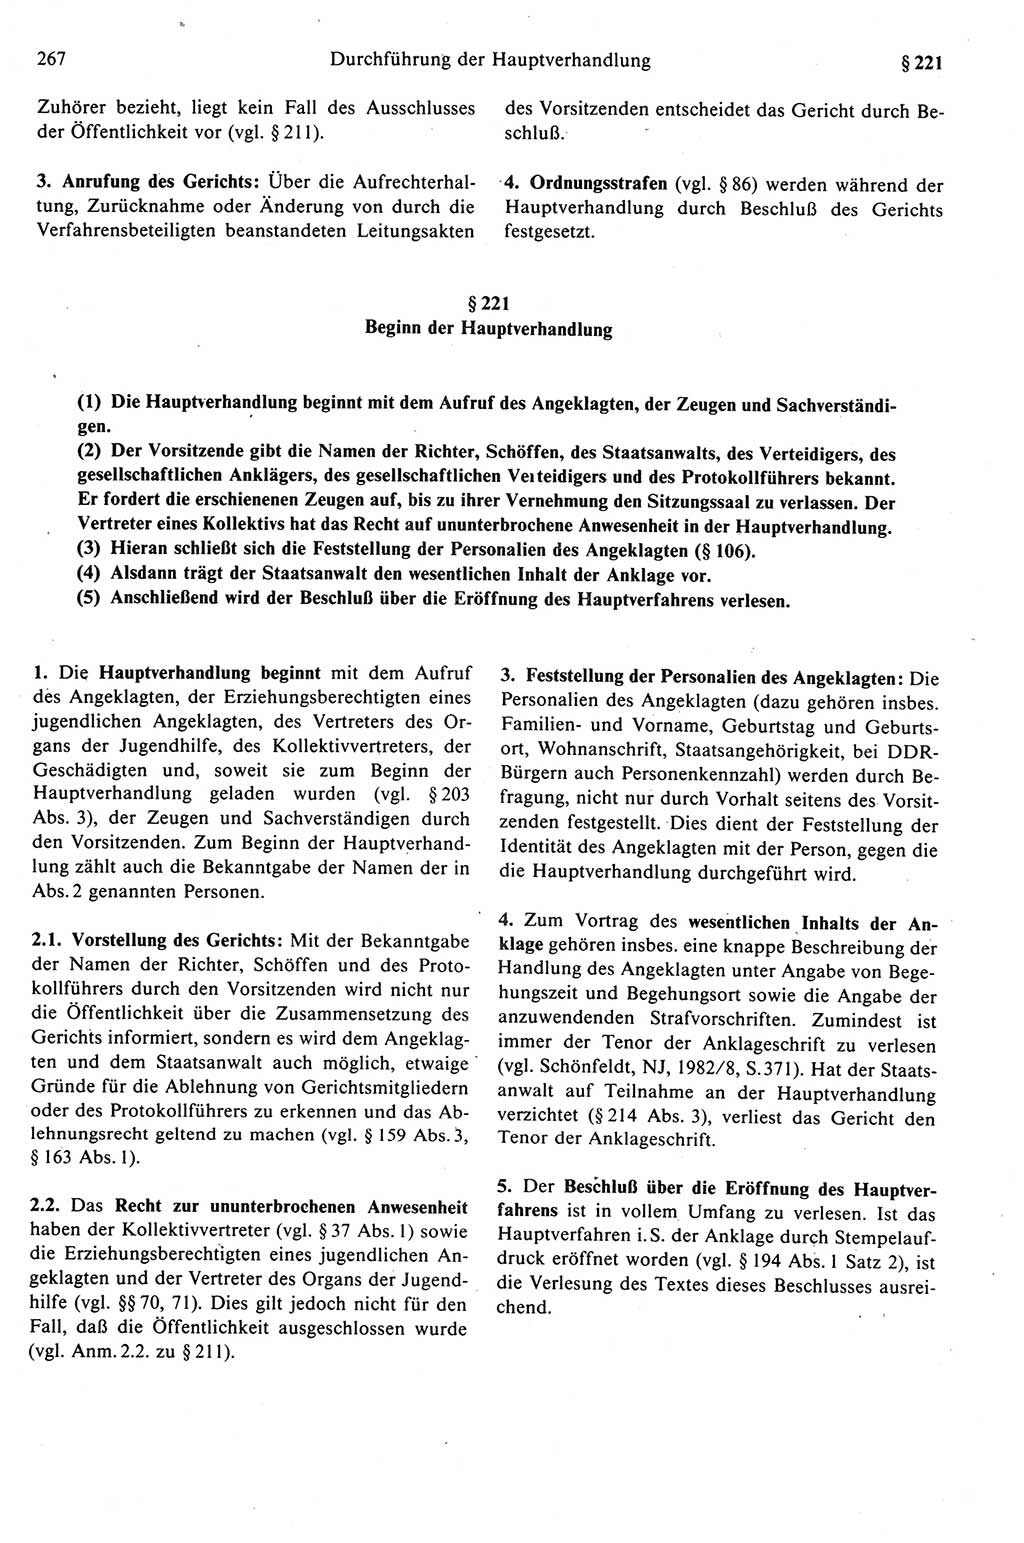 Strafprozeßrecht der DDR (Deutsche Demokratische Republik), Kommentar zur Strafprozeßordnung (StPO) 1989, Seite 267 (Strafprozeßr. DDR Komm. StPO 1989, S. 267)